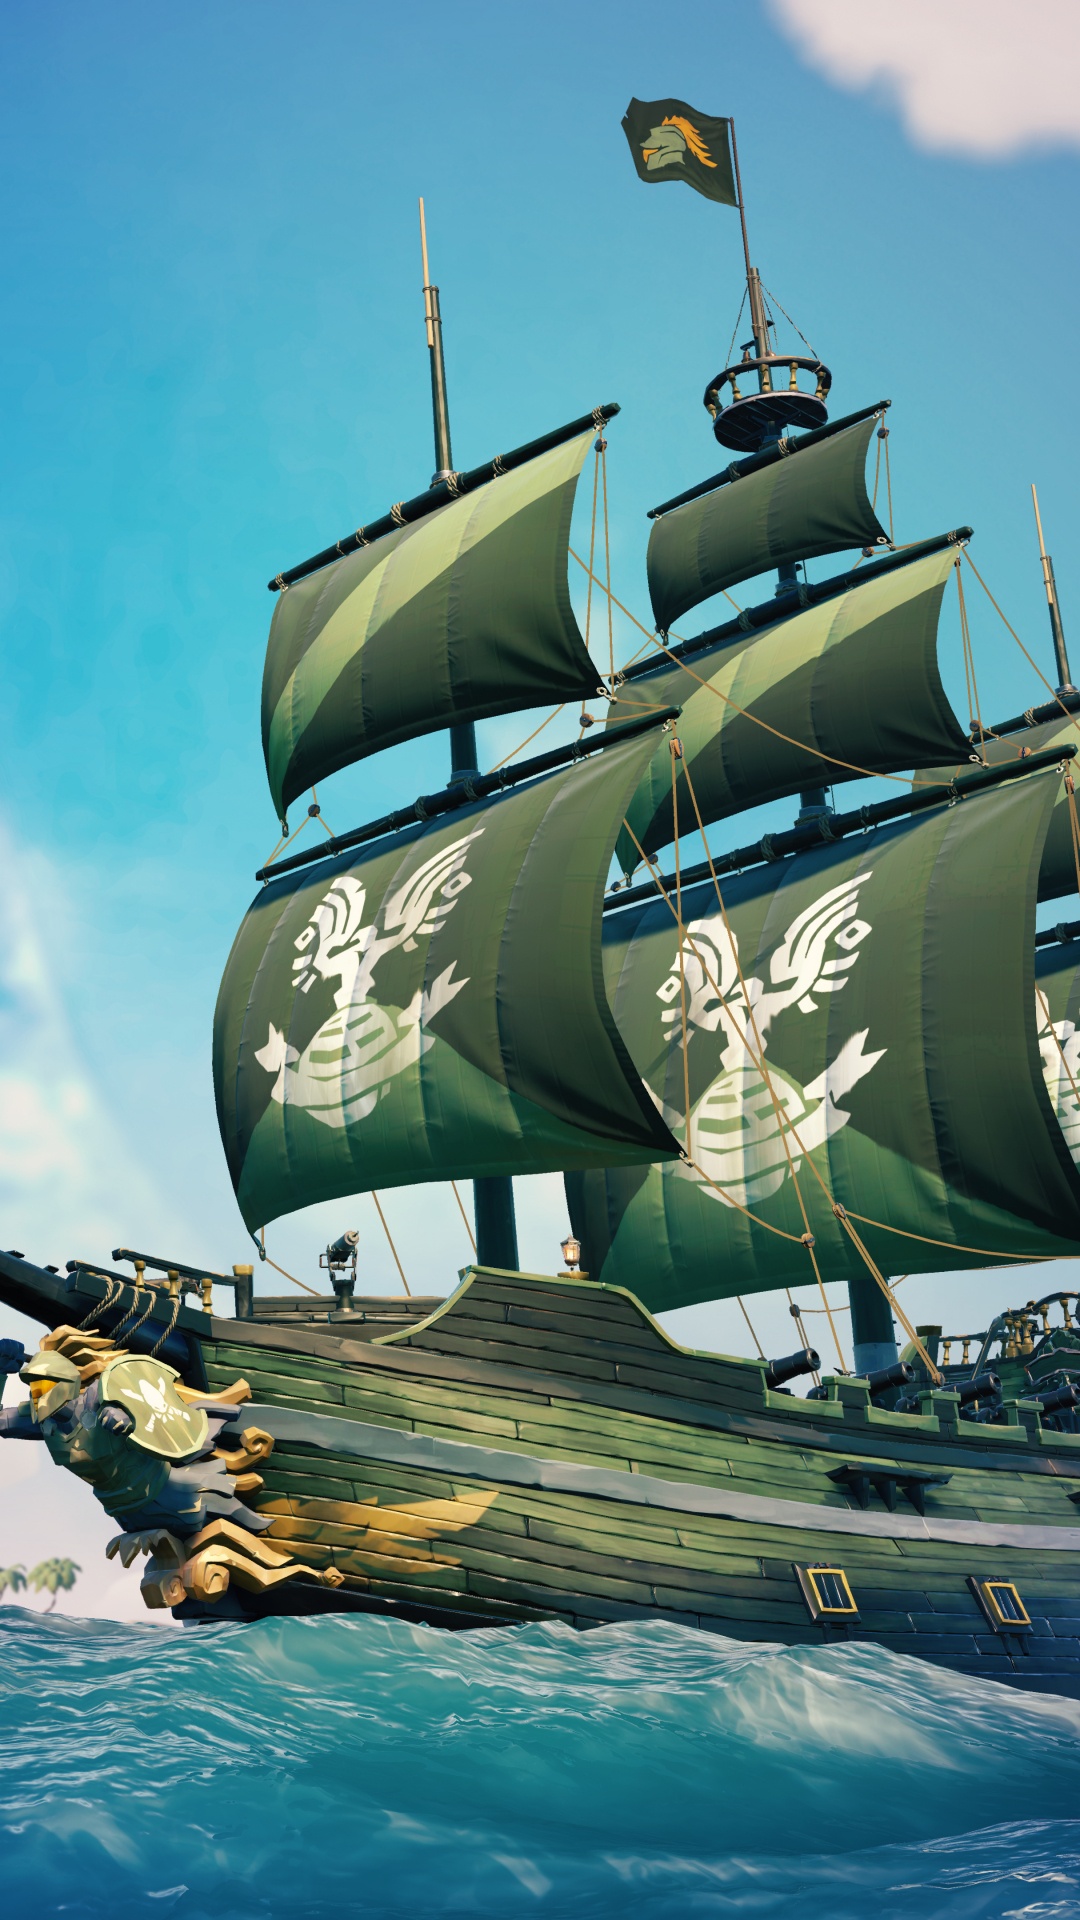 Xbox游戏室, 马尼拉大帆船, 船只, Fluyt, 旗舰 壁纸 1080x1920 允许